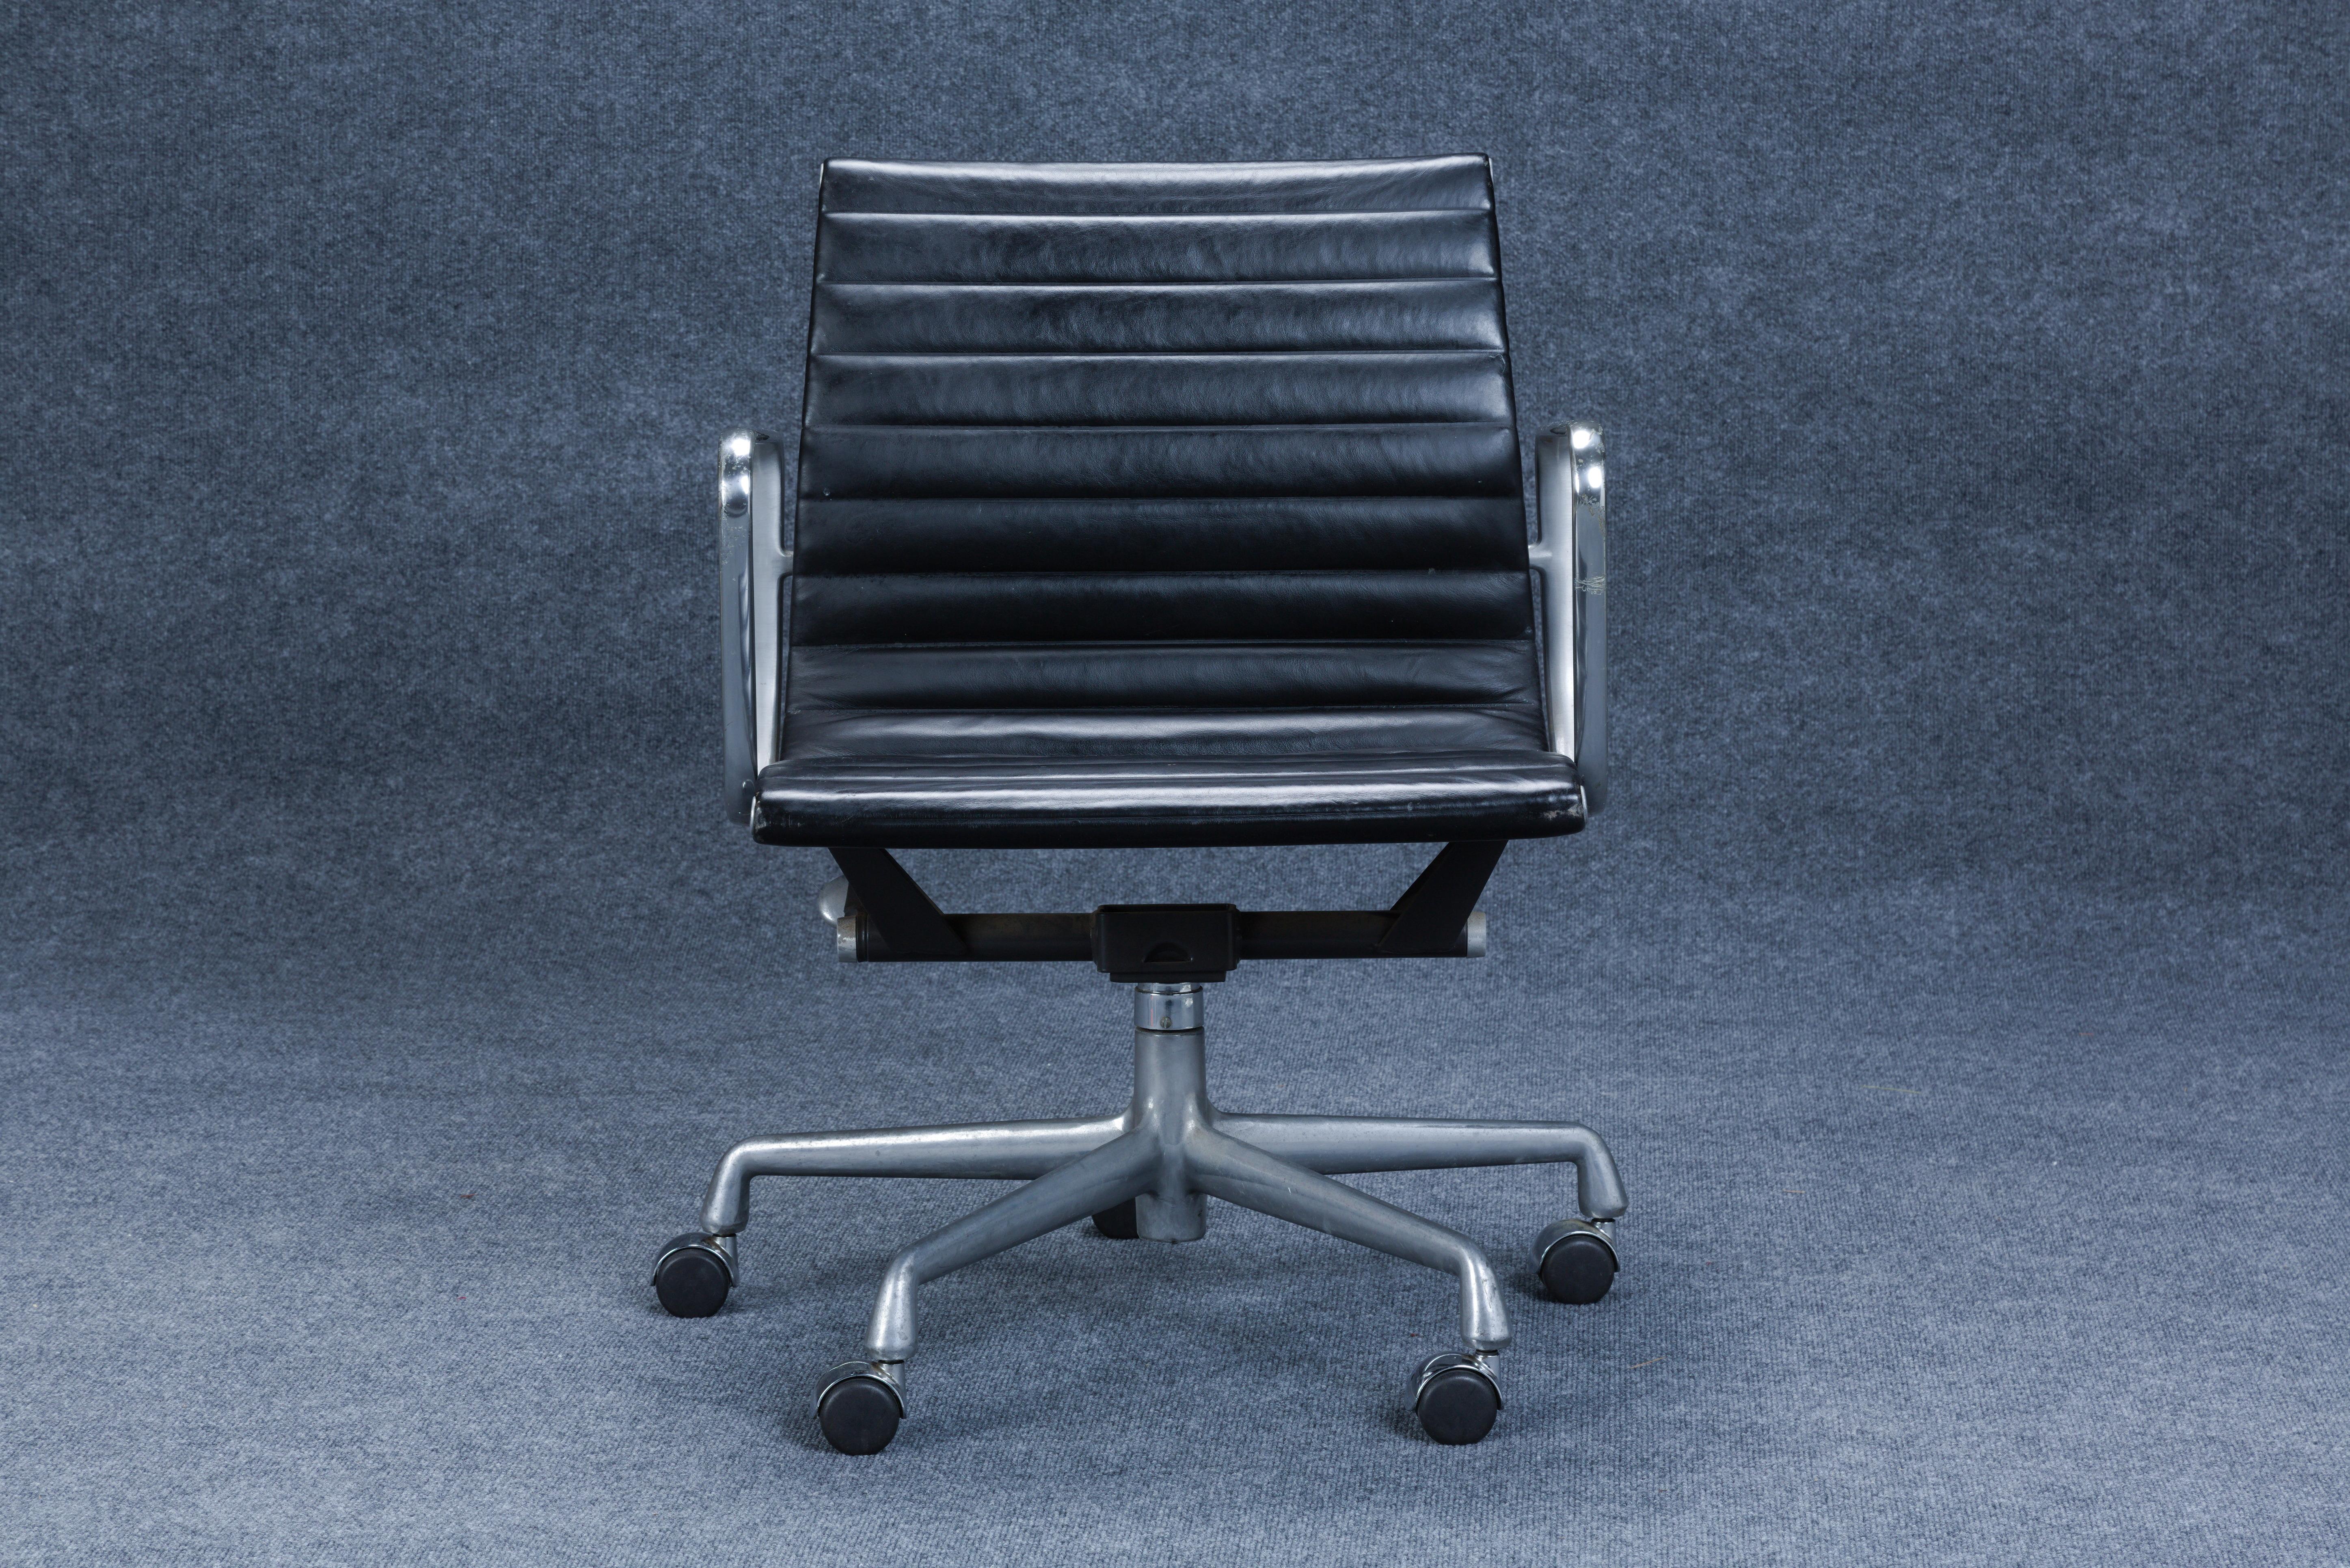 Eames Aluminum Group for Herman Miller Task Chair, Zeeland, Michigan, um 1965, Aluminium, Leder, Label des Herstellers Herman Miller, Ht. 30, Wd. 23, Dp. 24 in. Die Sitzhöhe ist zwischen 17